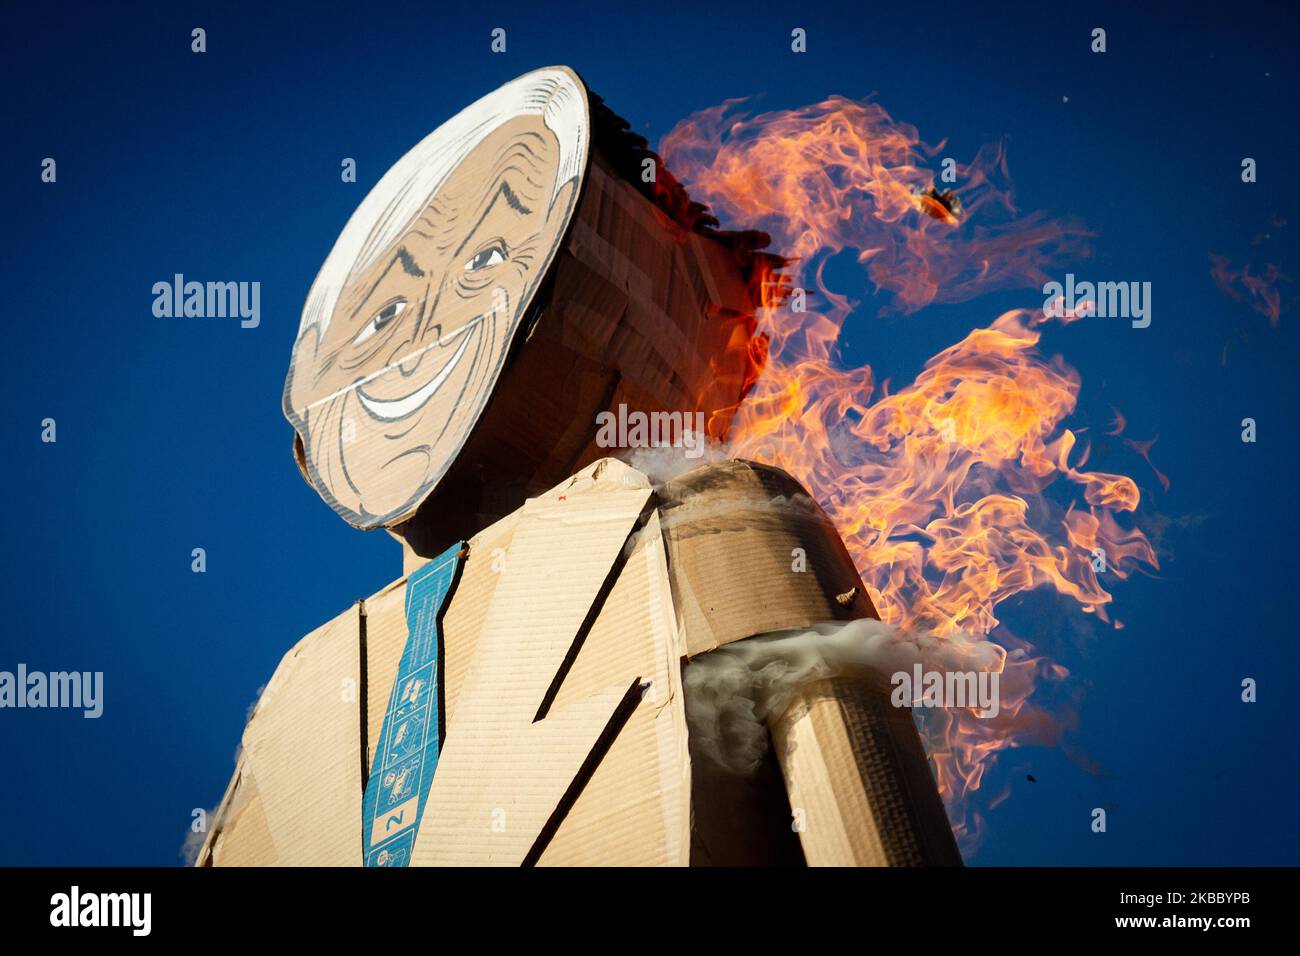 Les manifestants chiliens brûlent une figure de président lors de manifestations contre le gouvernement du président Sebastian Pinera à 29 novembre 2019 à Santiago, au Chili. (Photo par Federico Rotter/NurPhoto) Banque D'Images